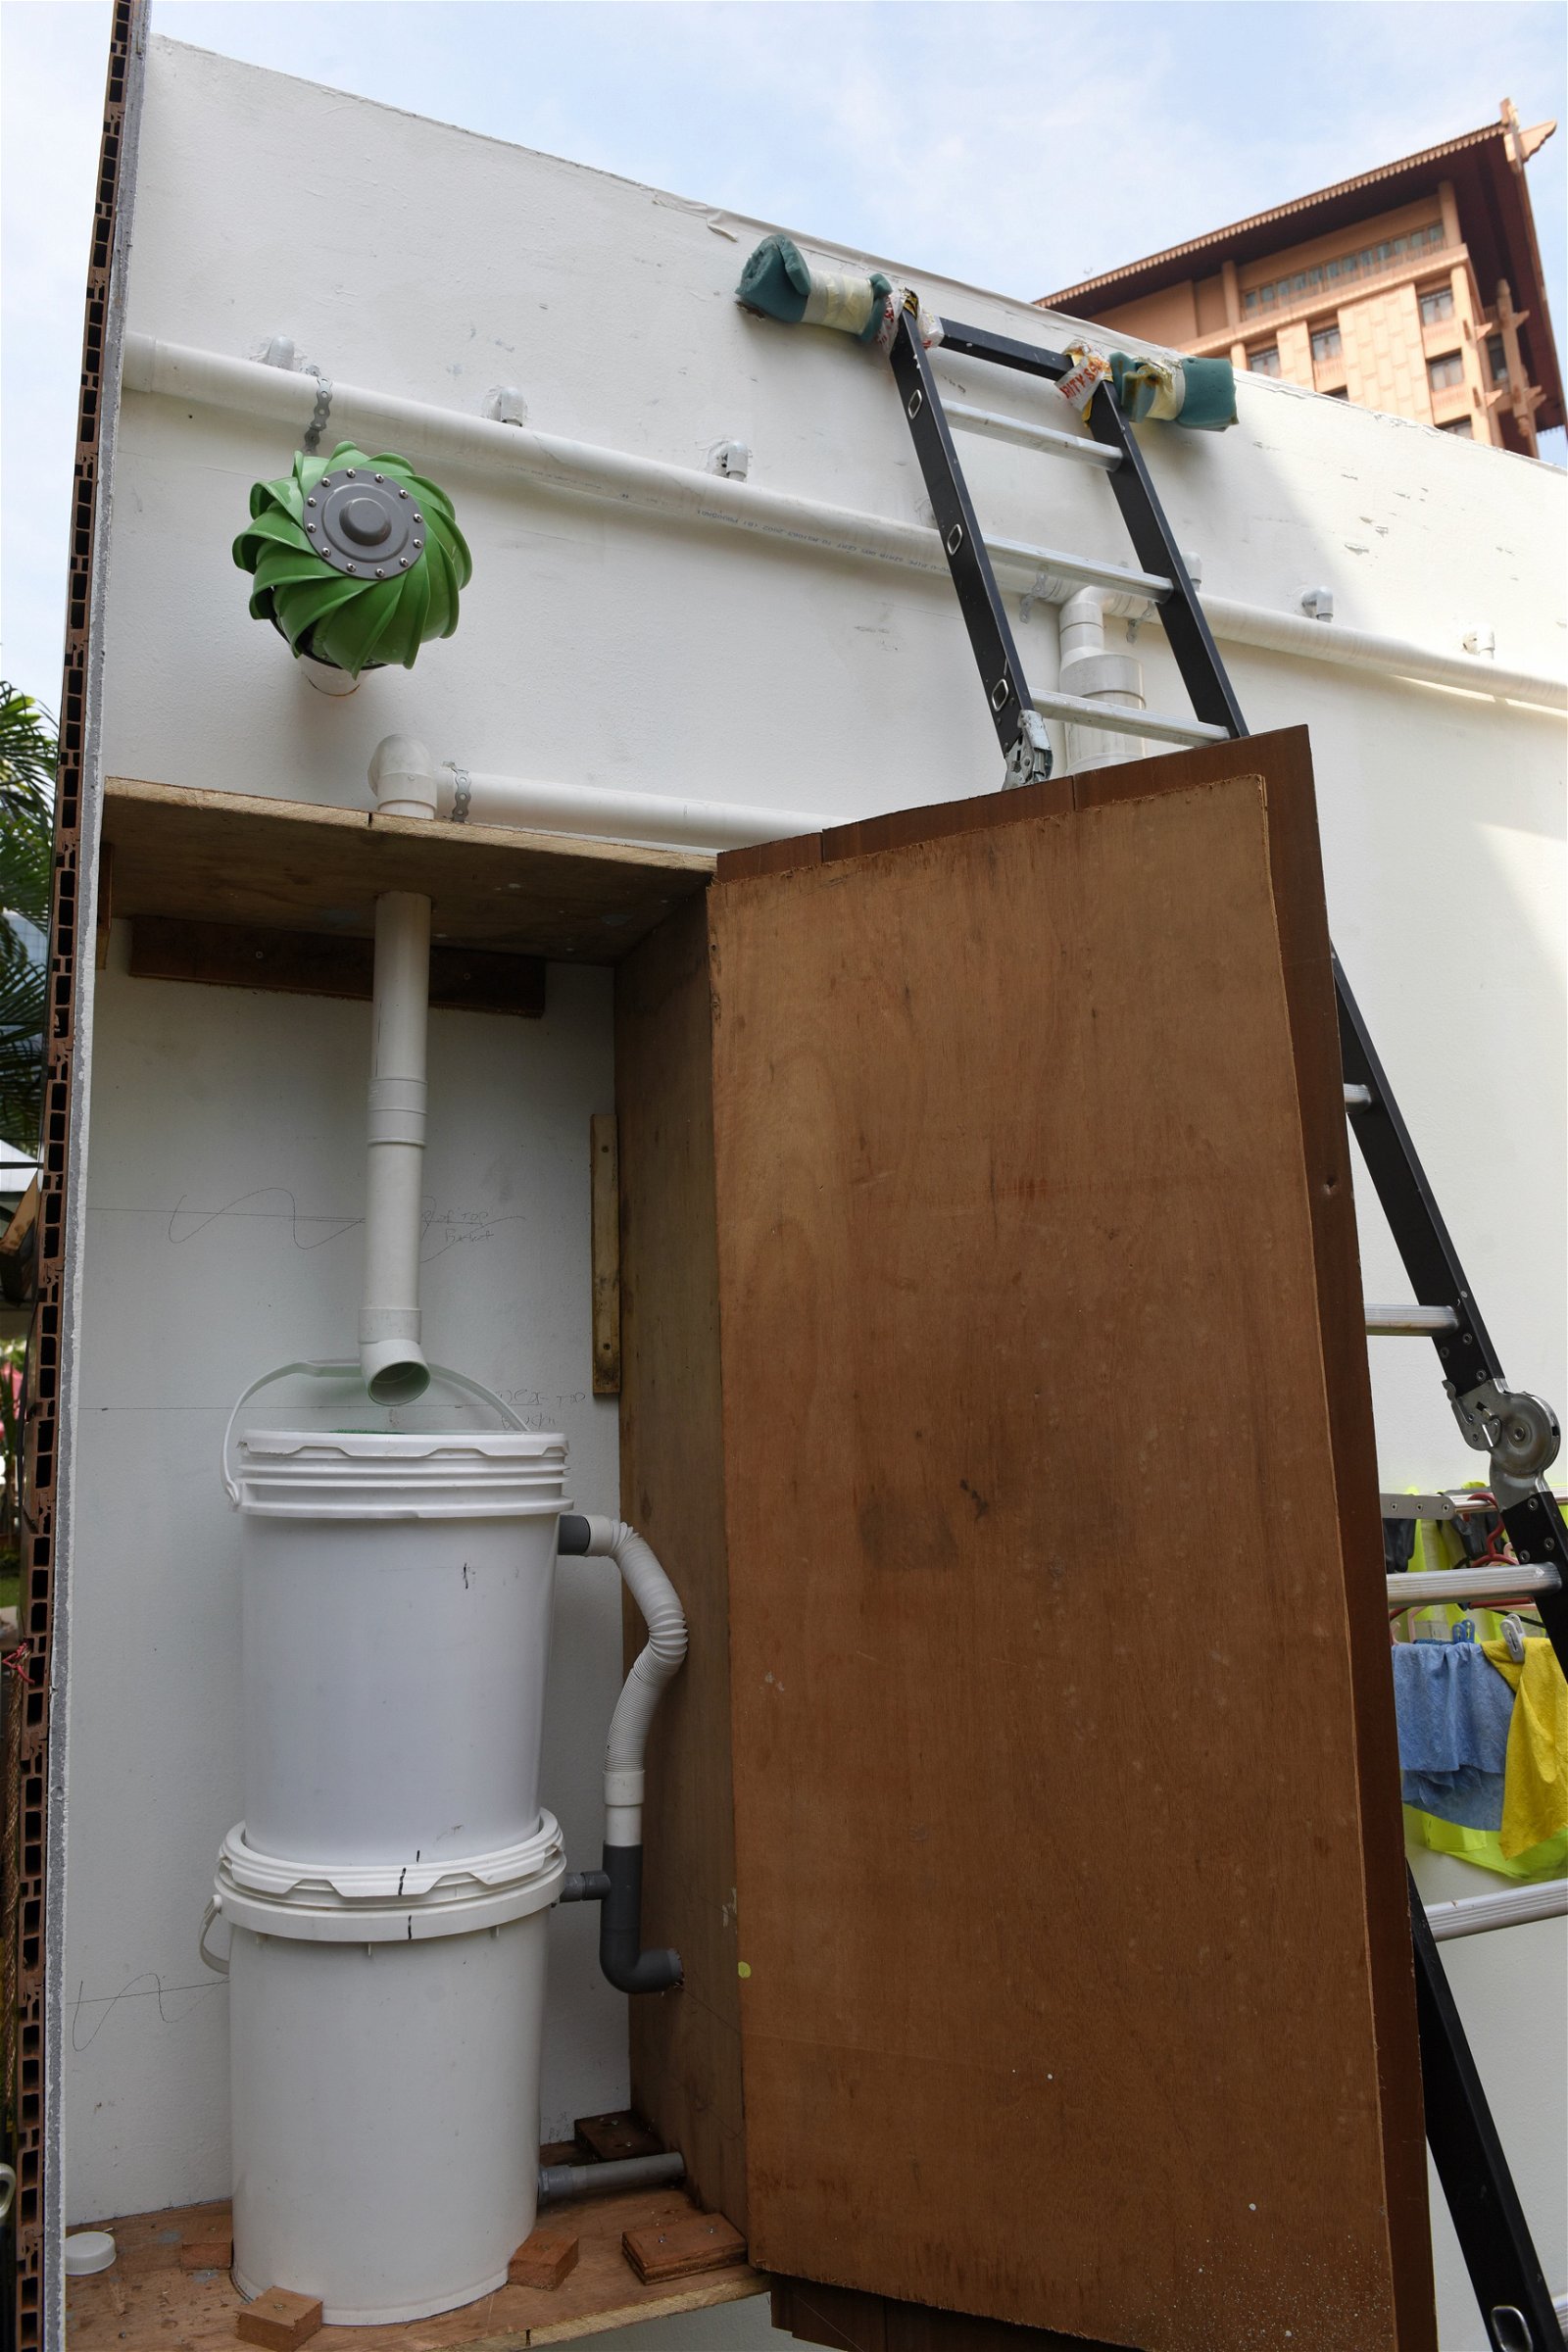 过滤系统与储水箱：建筑师在屋顶设了倾斜的凹槽集蓄雨水，雨水会流向屋顶上设好的排水道，经过过滤系统才会存入屋内的蓄水箱。